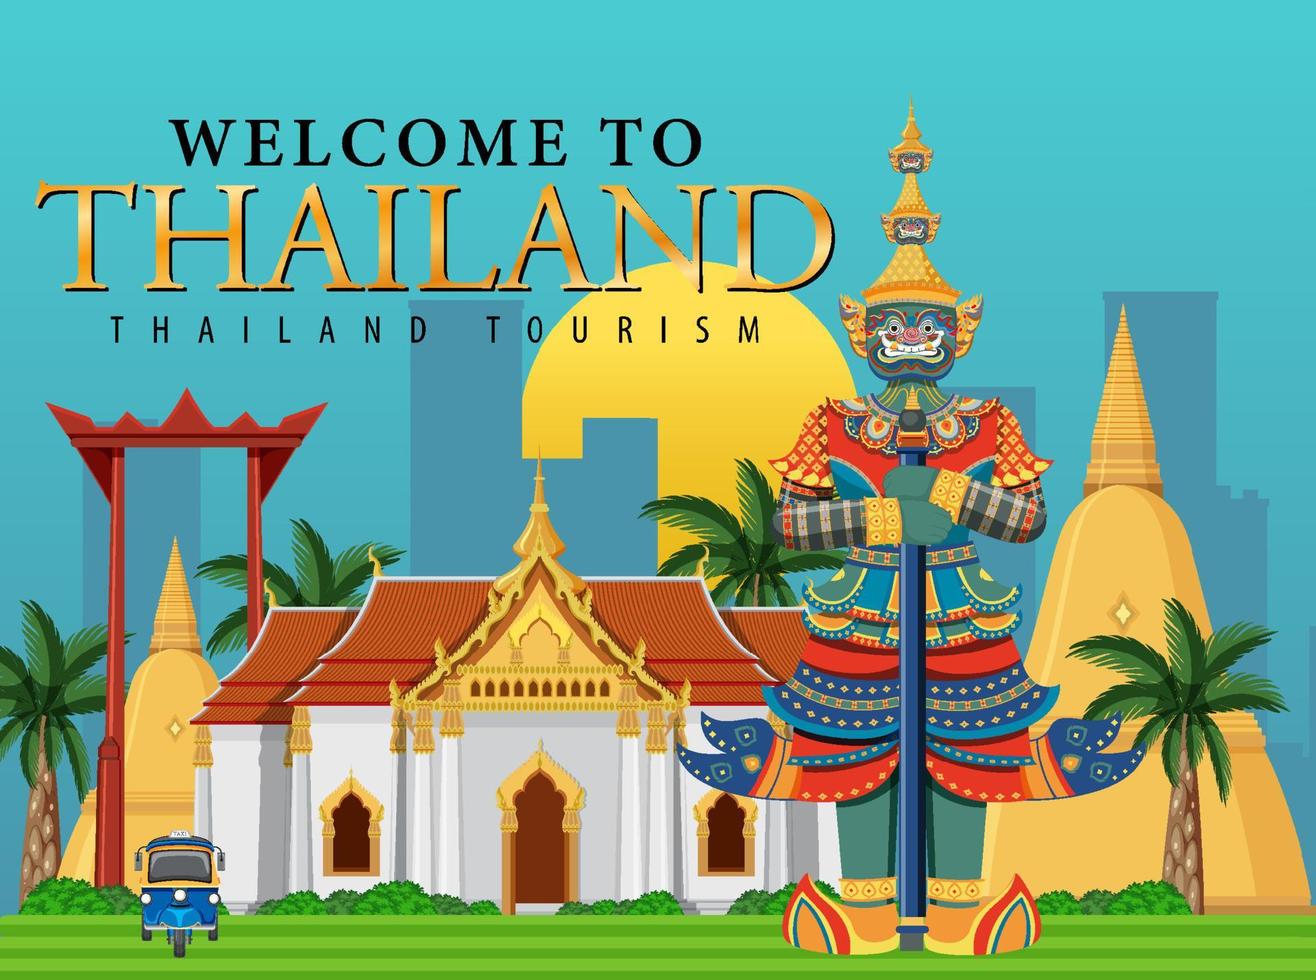 bem-vindo ao banner da tailândia vetor